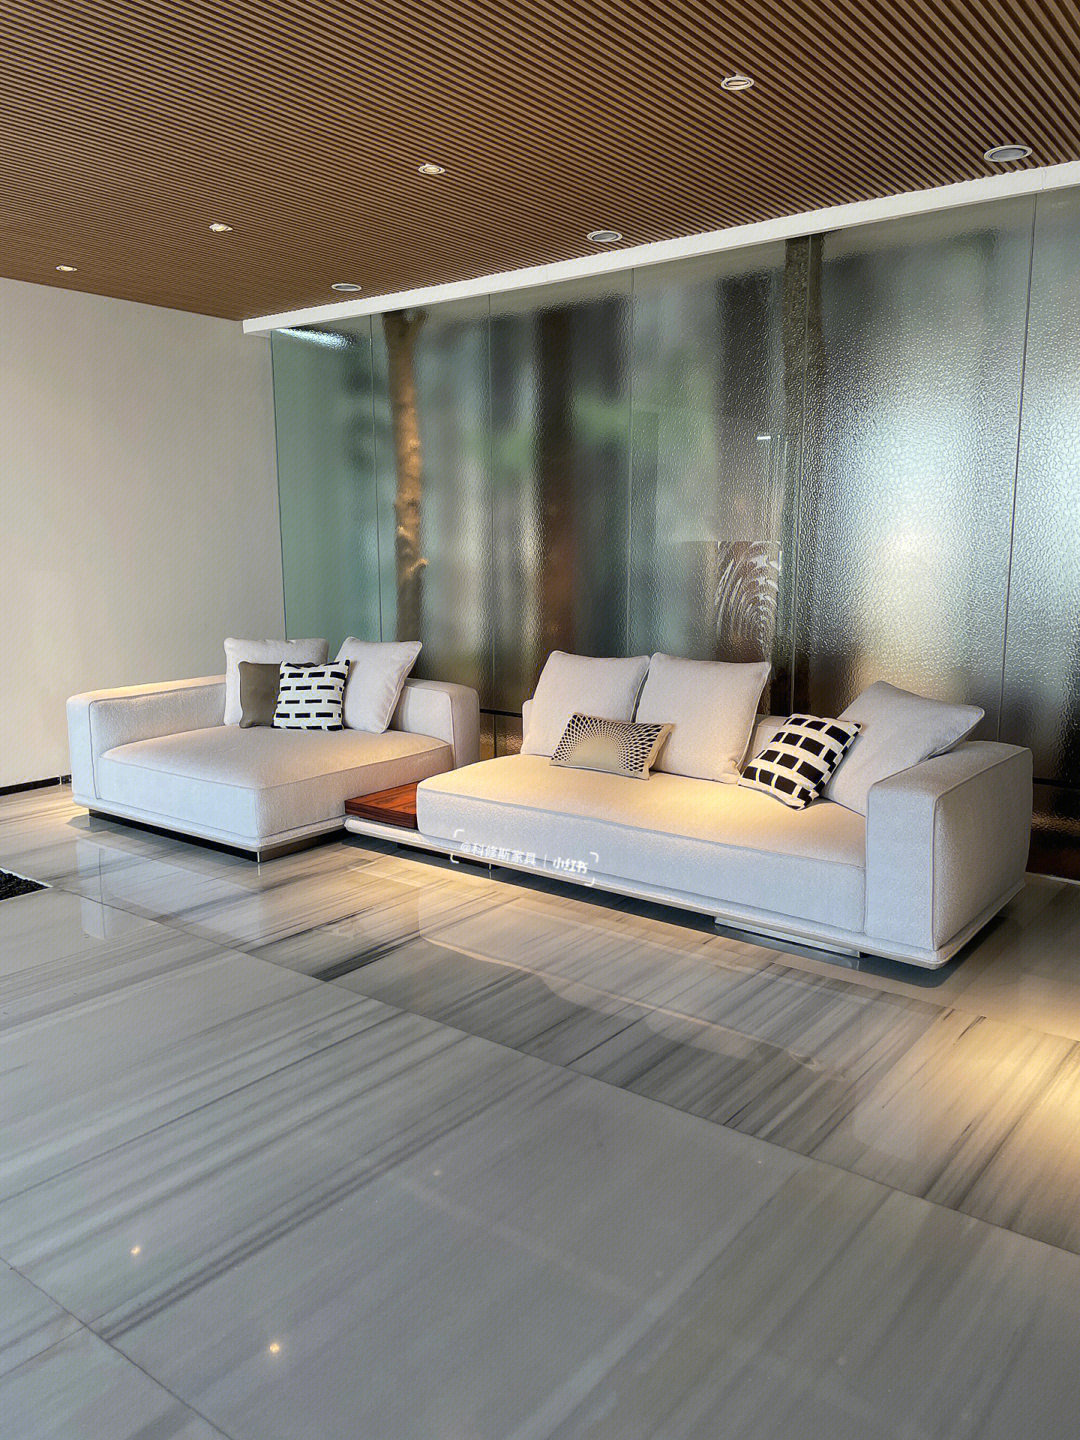 品牌:minotti品名:horizonte 地平线沙发沙发采用了悬挂式的底座,底座